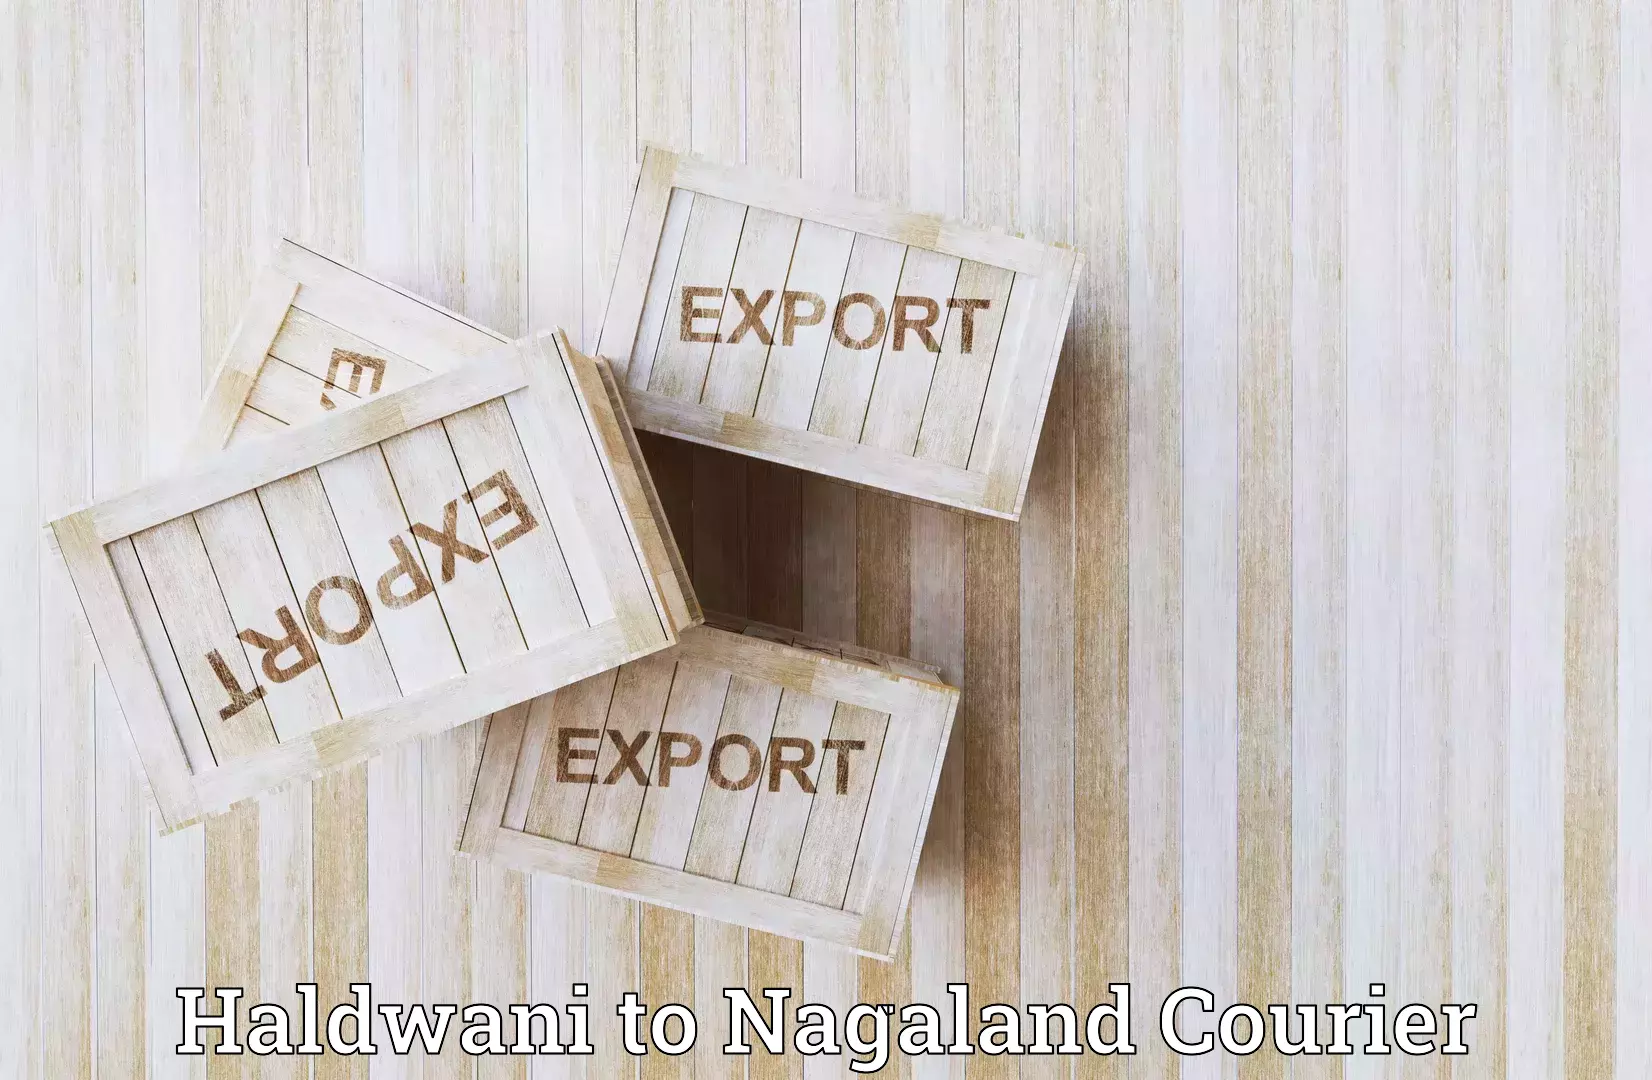 Courier dispatch services Haldwani to Dimapur